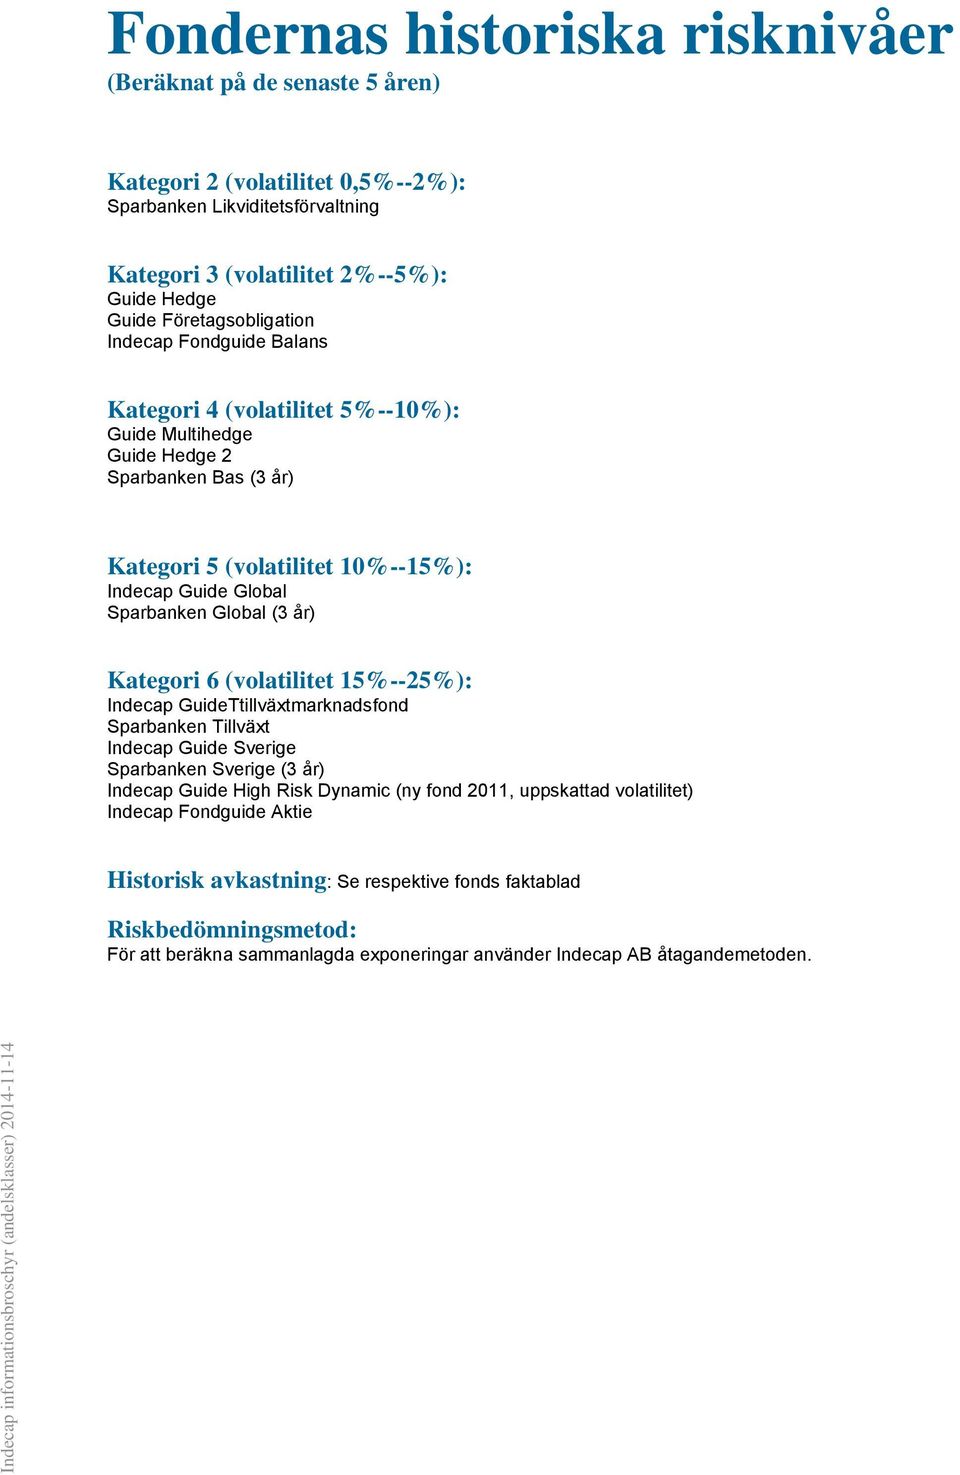 Sparbanken Global (3 år) Kategori 6 (volatilitet 15%--25%): Indecap GuideTtillväxtmarknadsfond Sparbanken Tillväxt Indecap Guide Sverige Sparbanken Sverige (3 år) Indecap Guide High Risk Dynamic